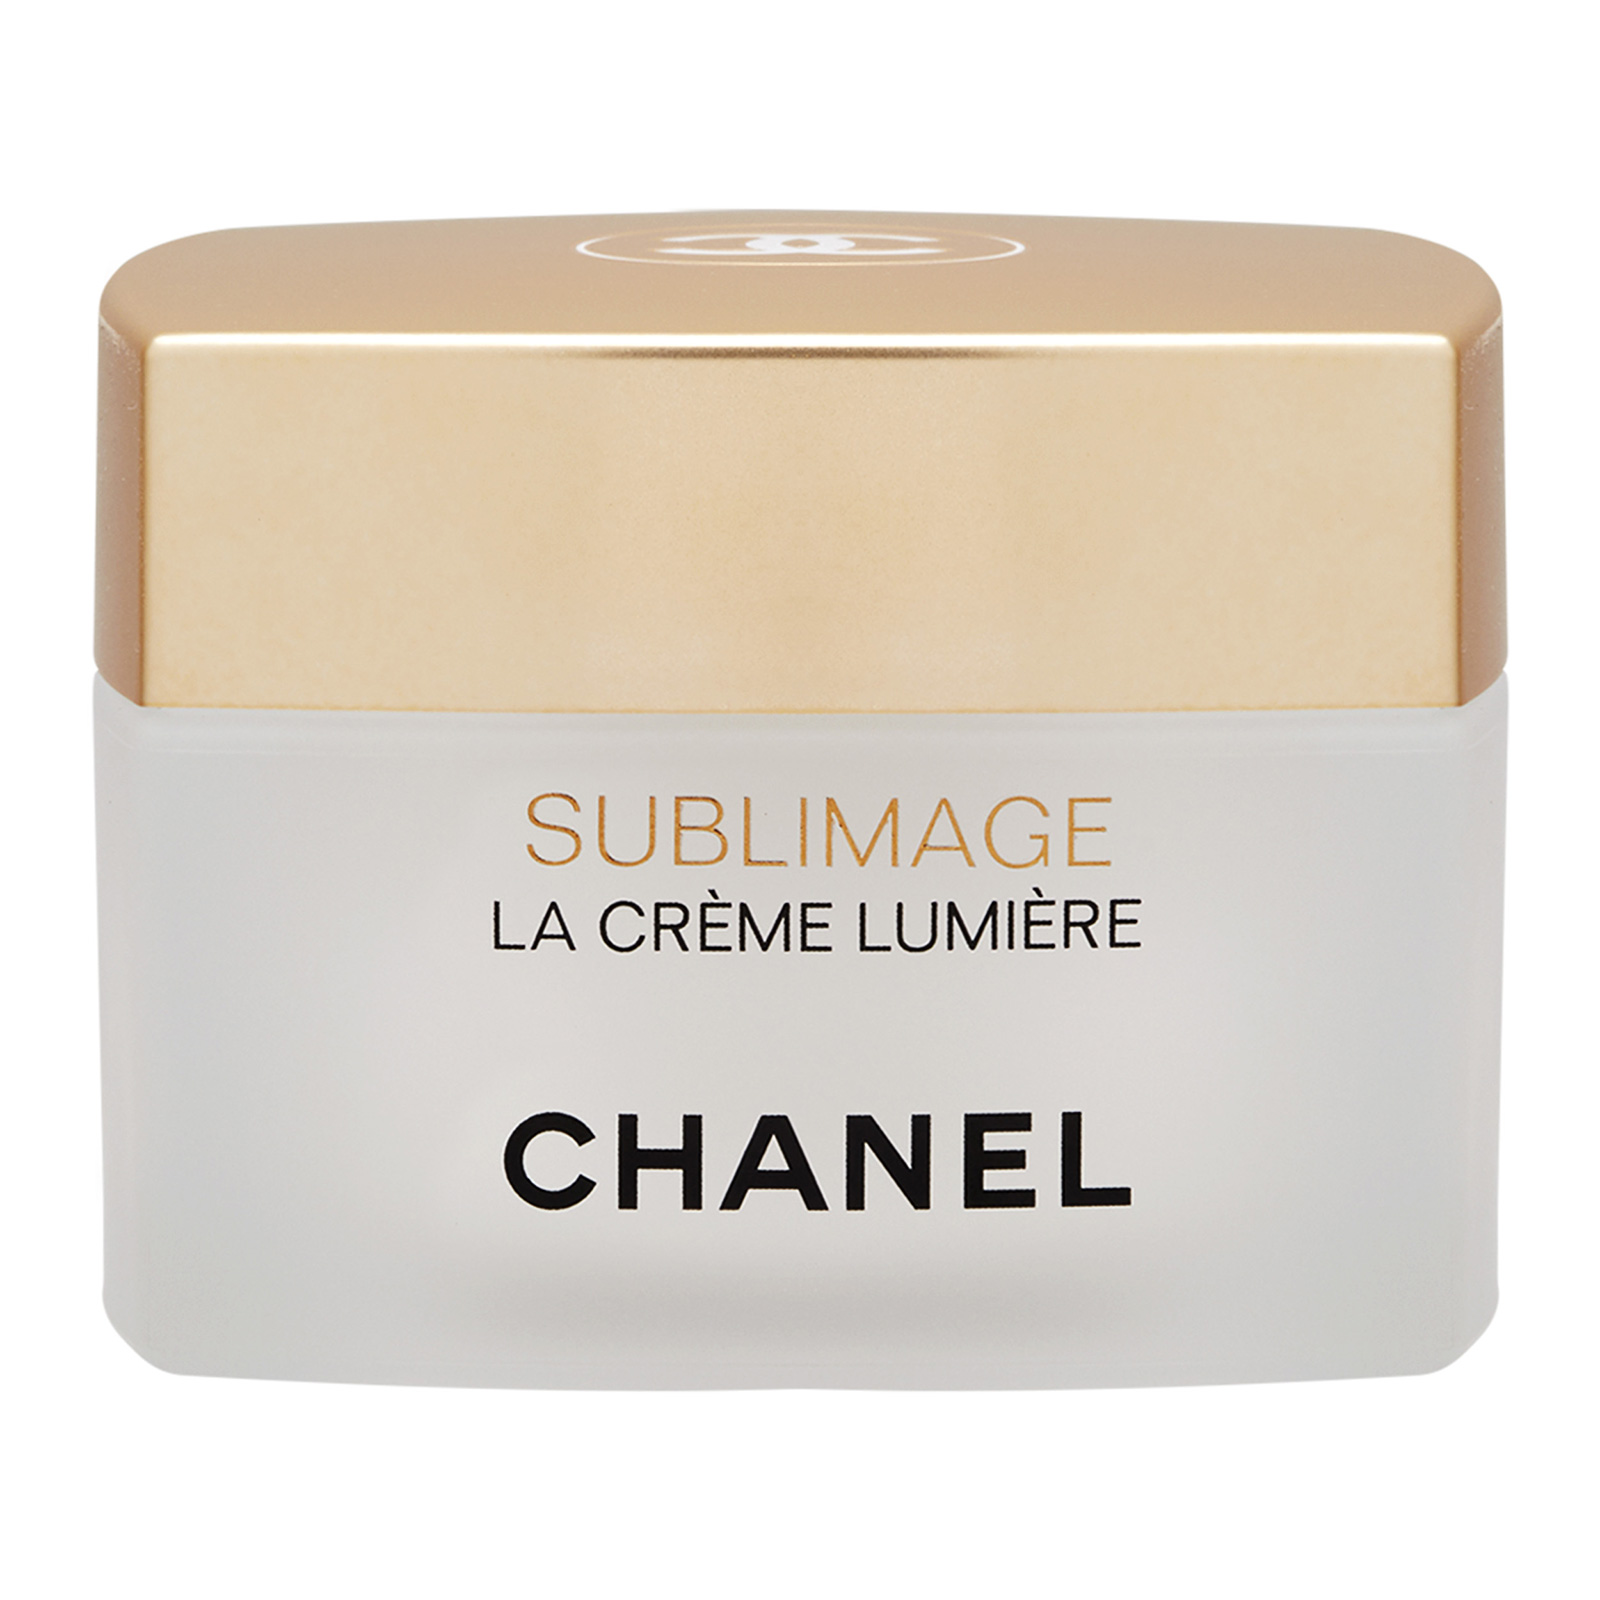 SUBLIMAGE LA CRÈME LUMIÈRE Ultimate Regeneration & Brightening Cream  1.7oz/50g